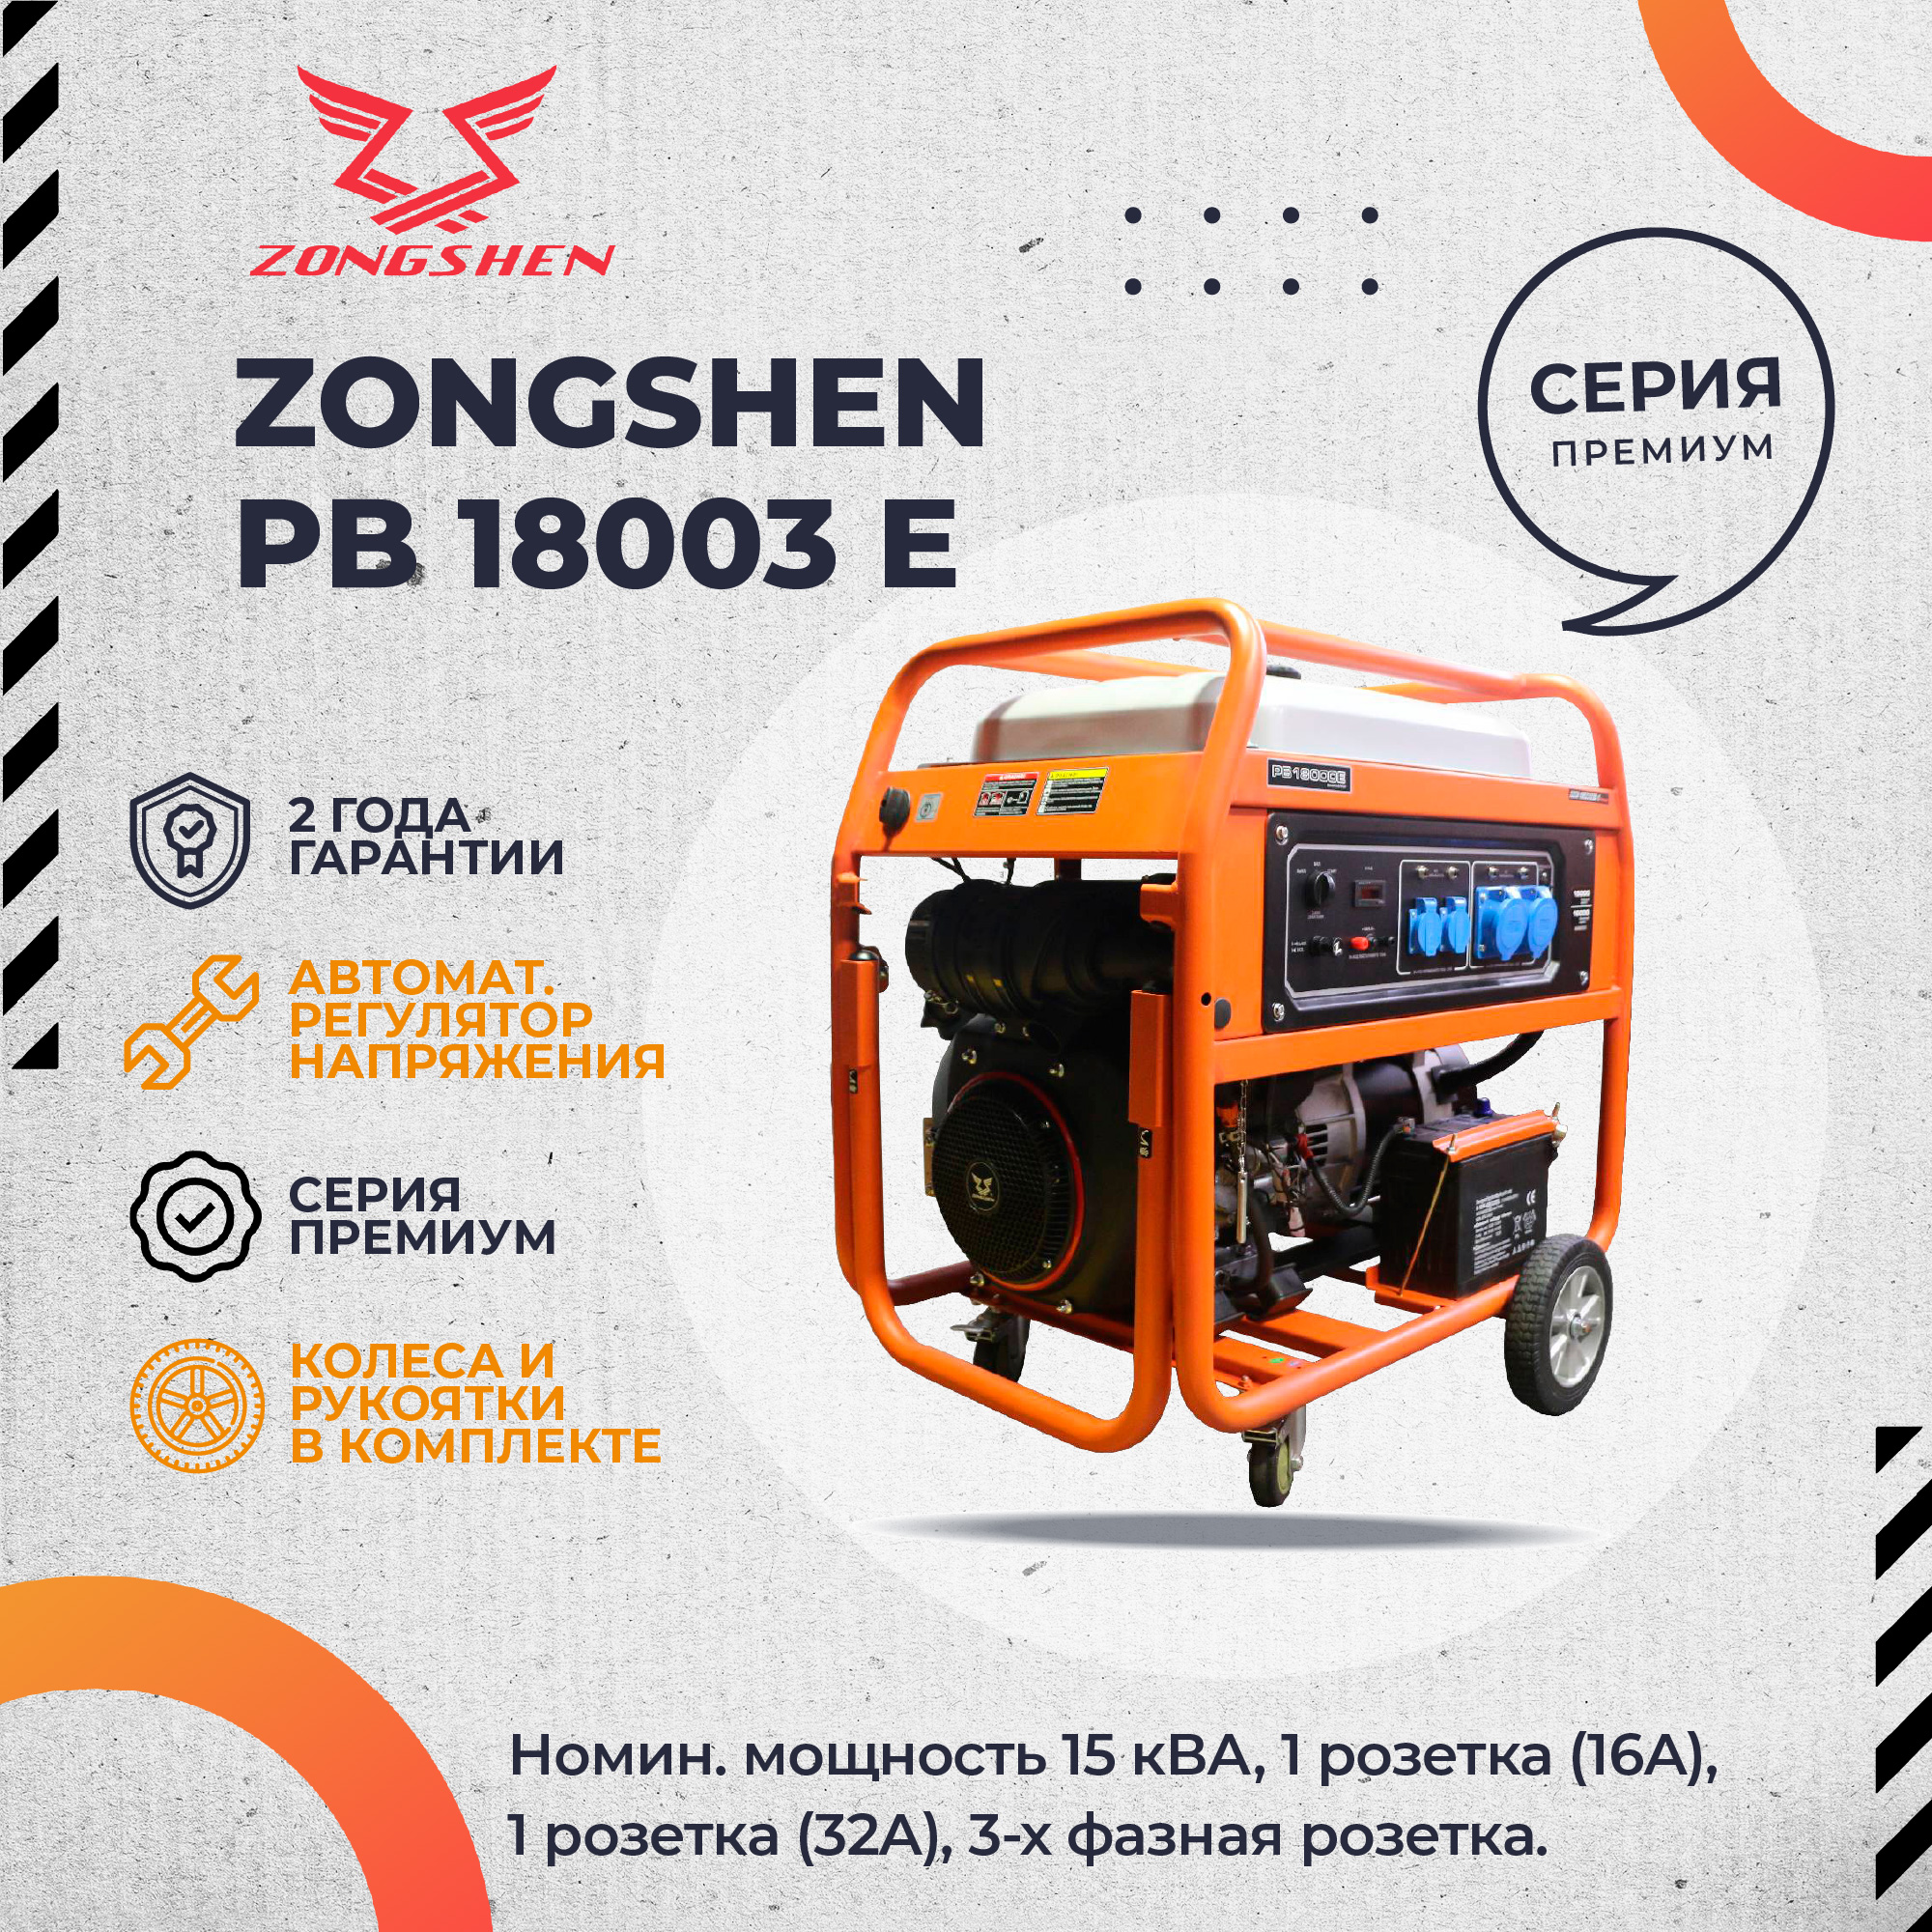 Бензиновый генератор Zongshen PB 18003 E